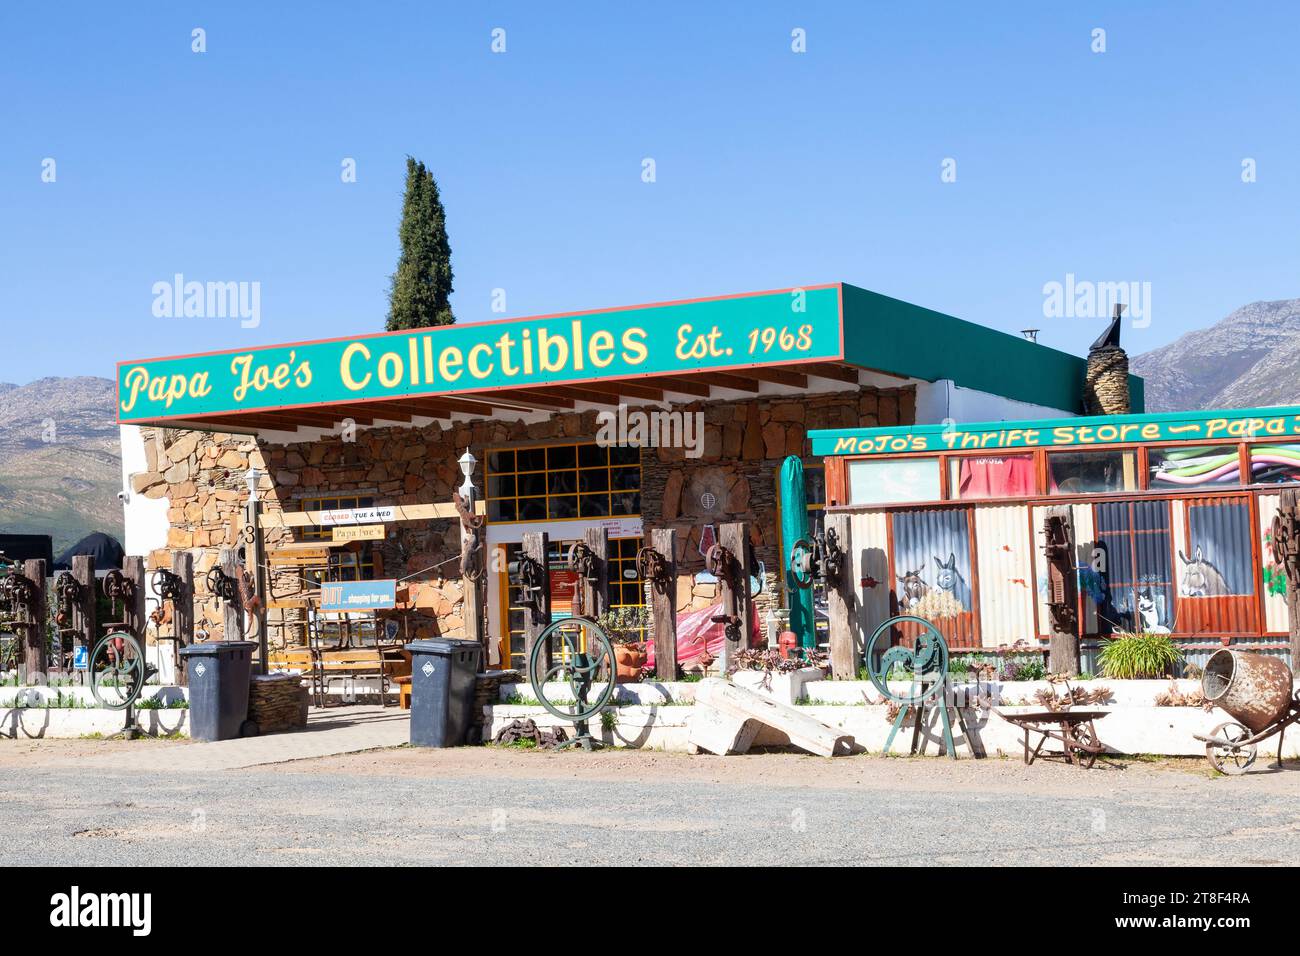 Papa Joe's Collectibles, un magasin d'antiquités pittoresque, Barrydale, Little Karoo, Western Cape, Afrique du Sud Banque D'Images